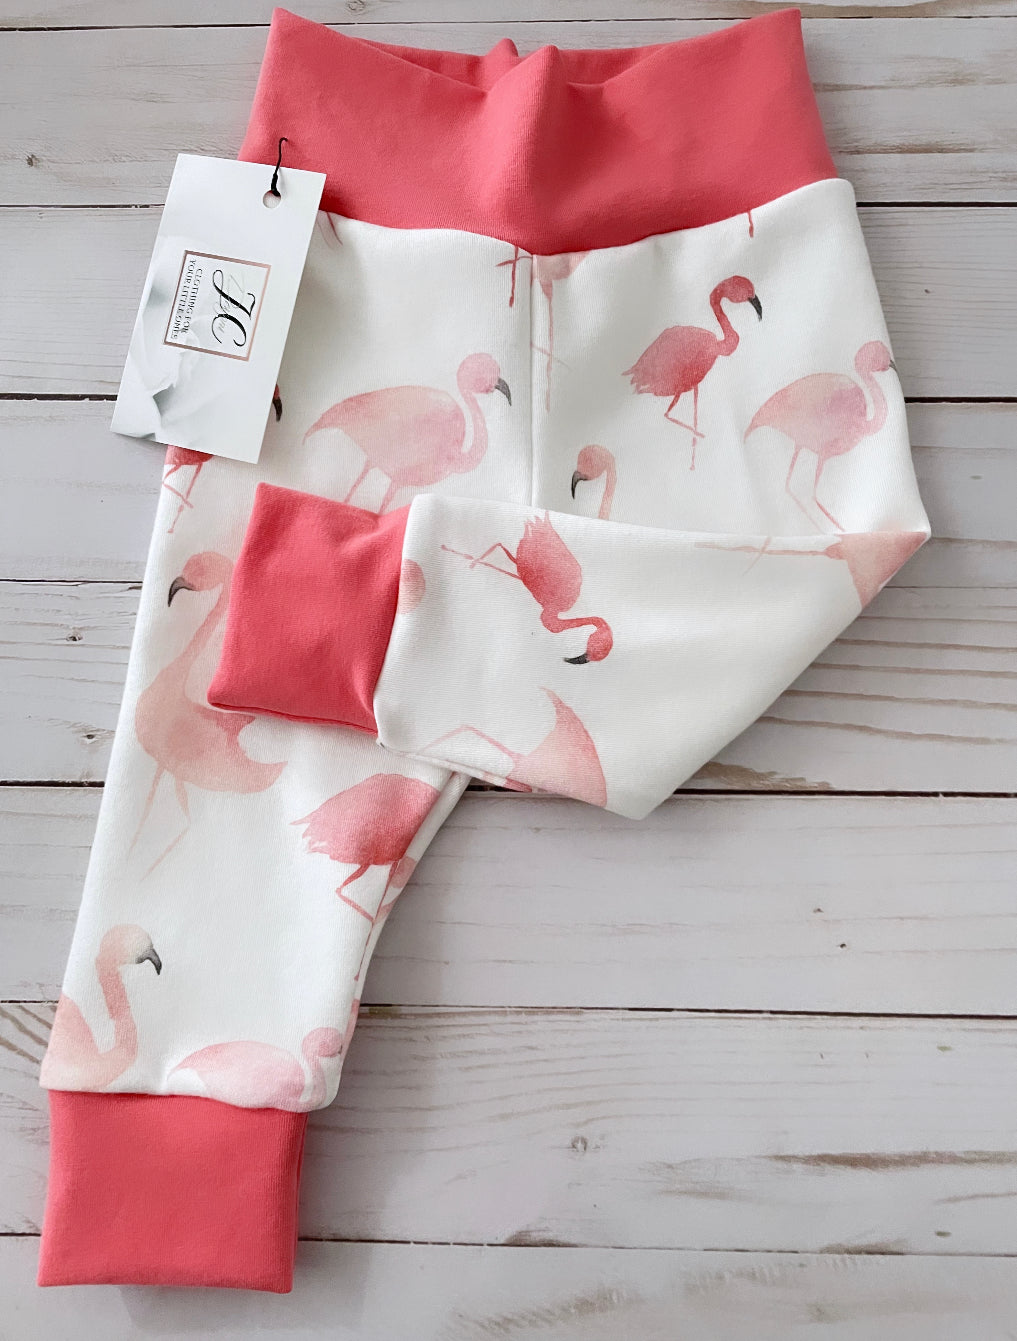 Flamingo baby leggings